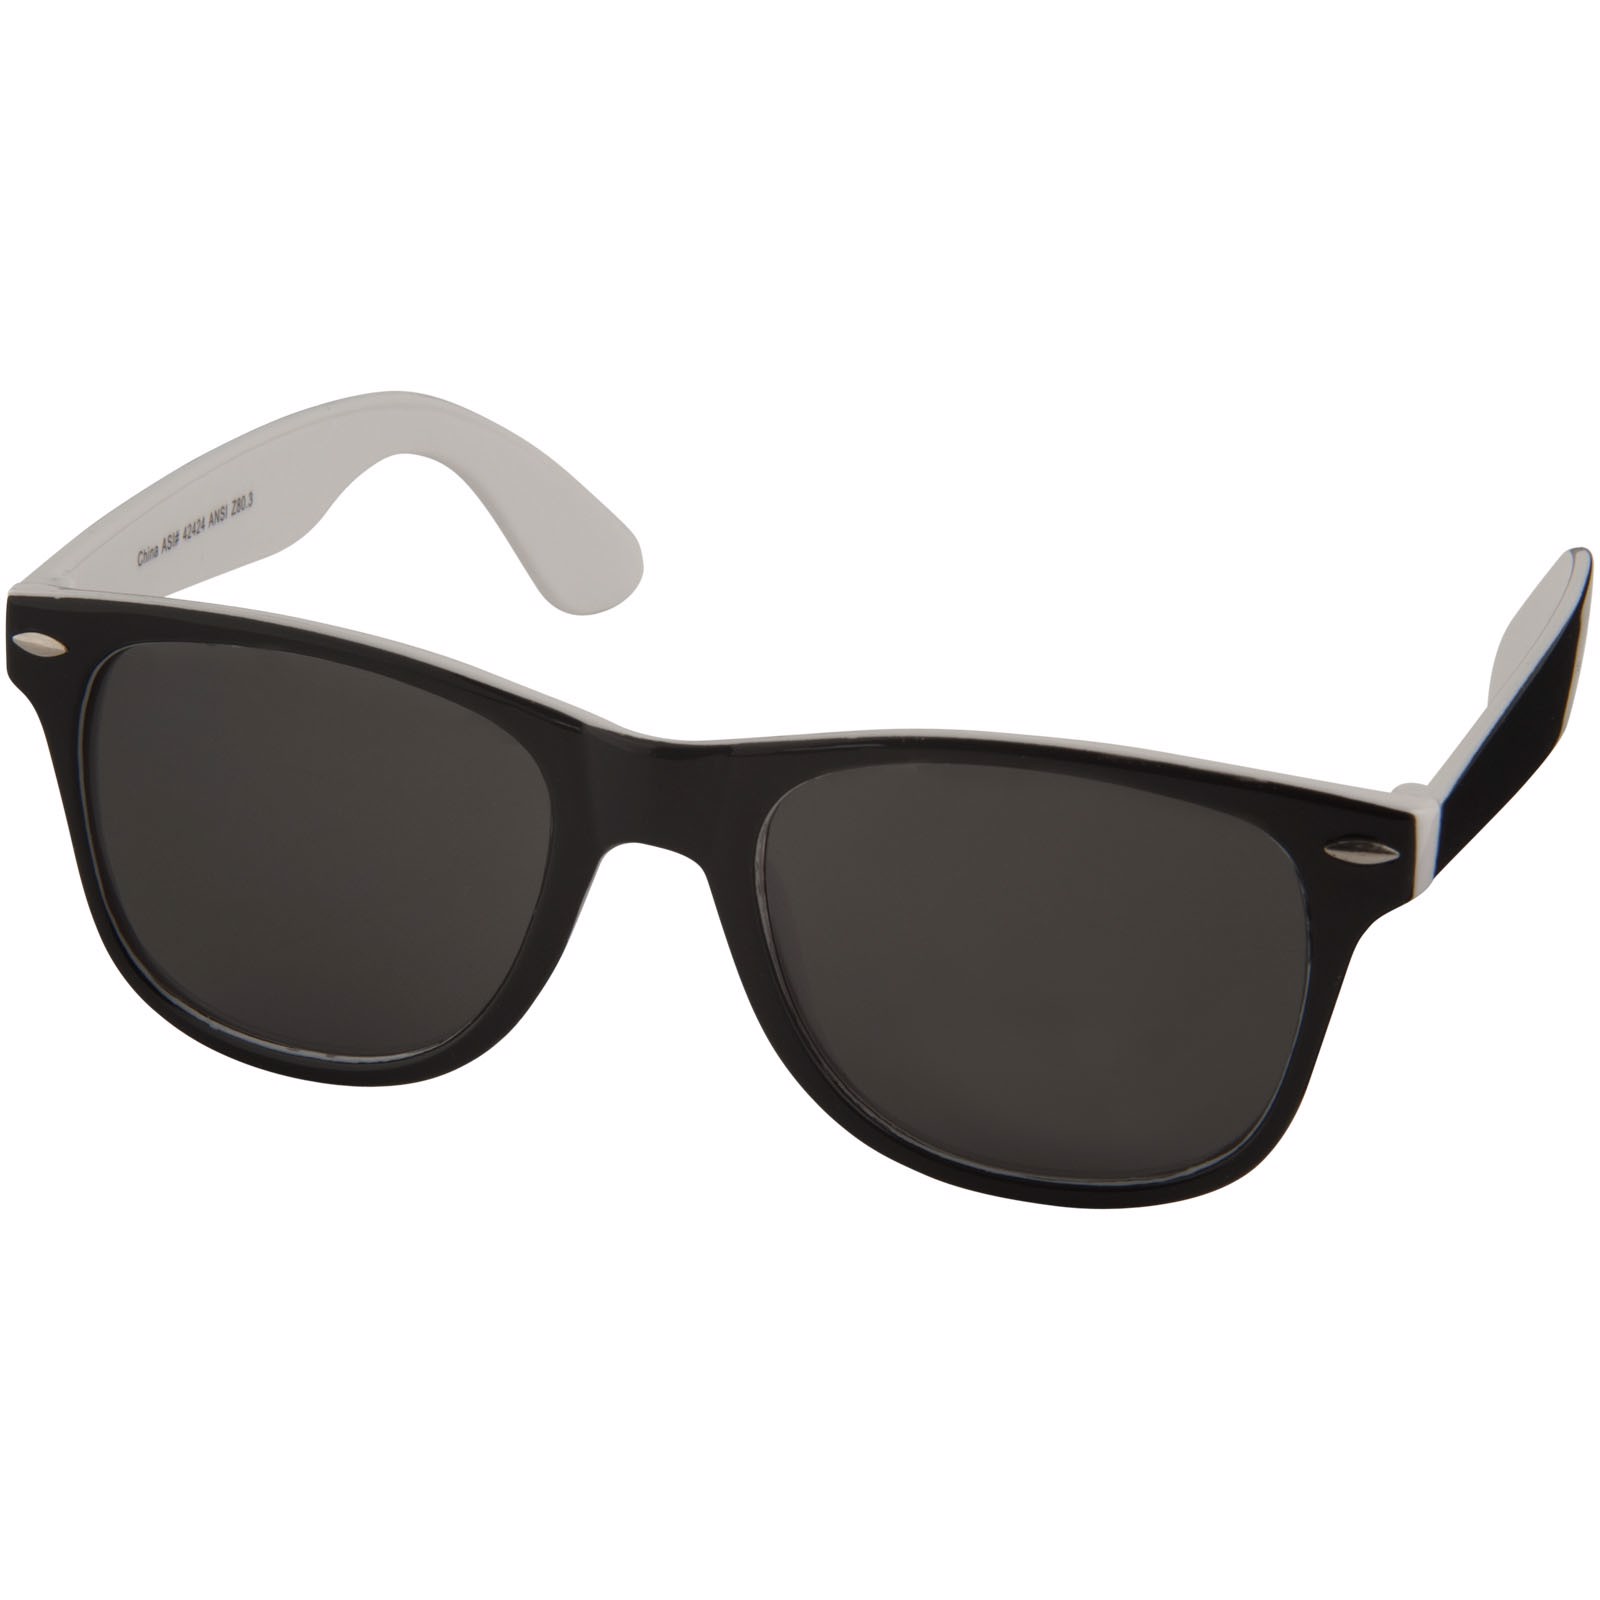 Sluneční brýle Sun Ray s dvoubarevnými odstíny - Bílá / Černá